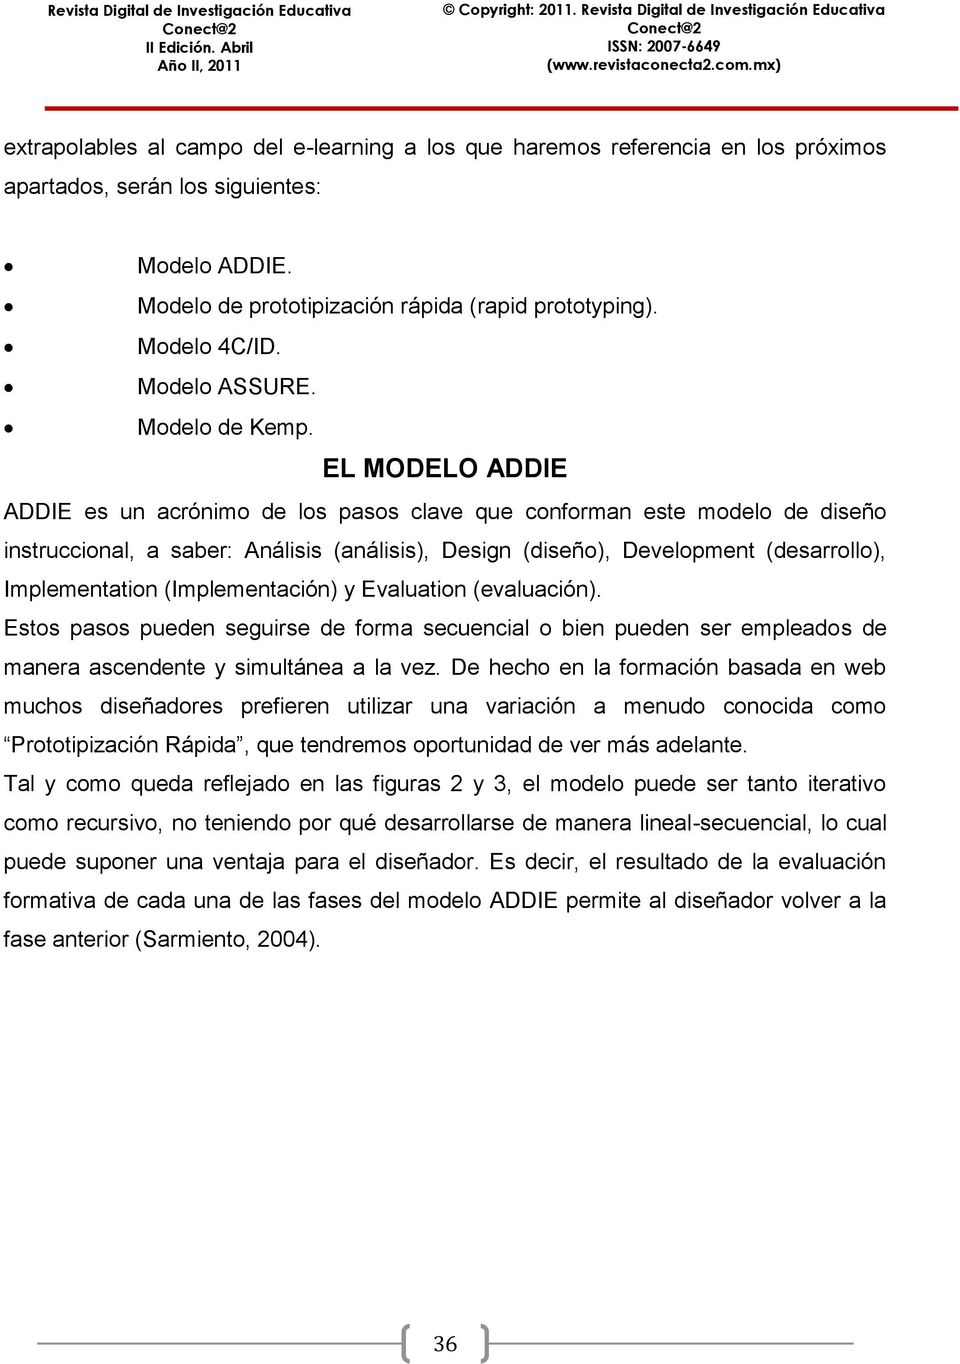 MODELOS DE DISEÑO INSTRUCCIONAL UTILIZADOS EN AMBIENTES TELEFORMATIVOS -  PDF Free Download